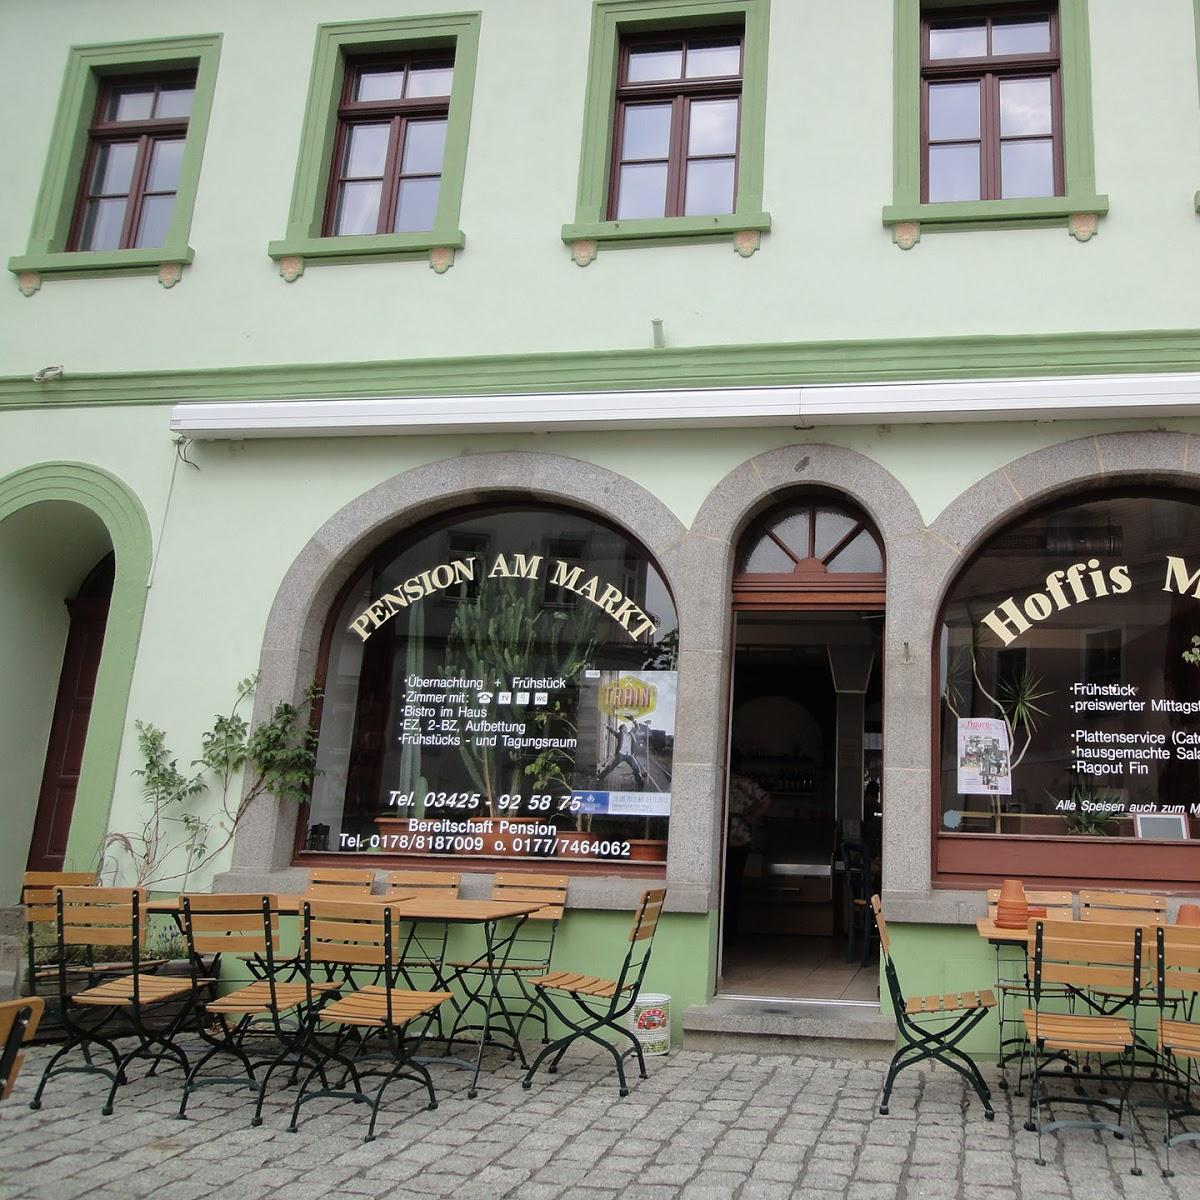 Restaurant "Hoffis Menü & Pension am Markt" in Wurzen